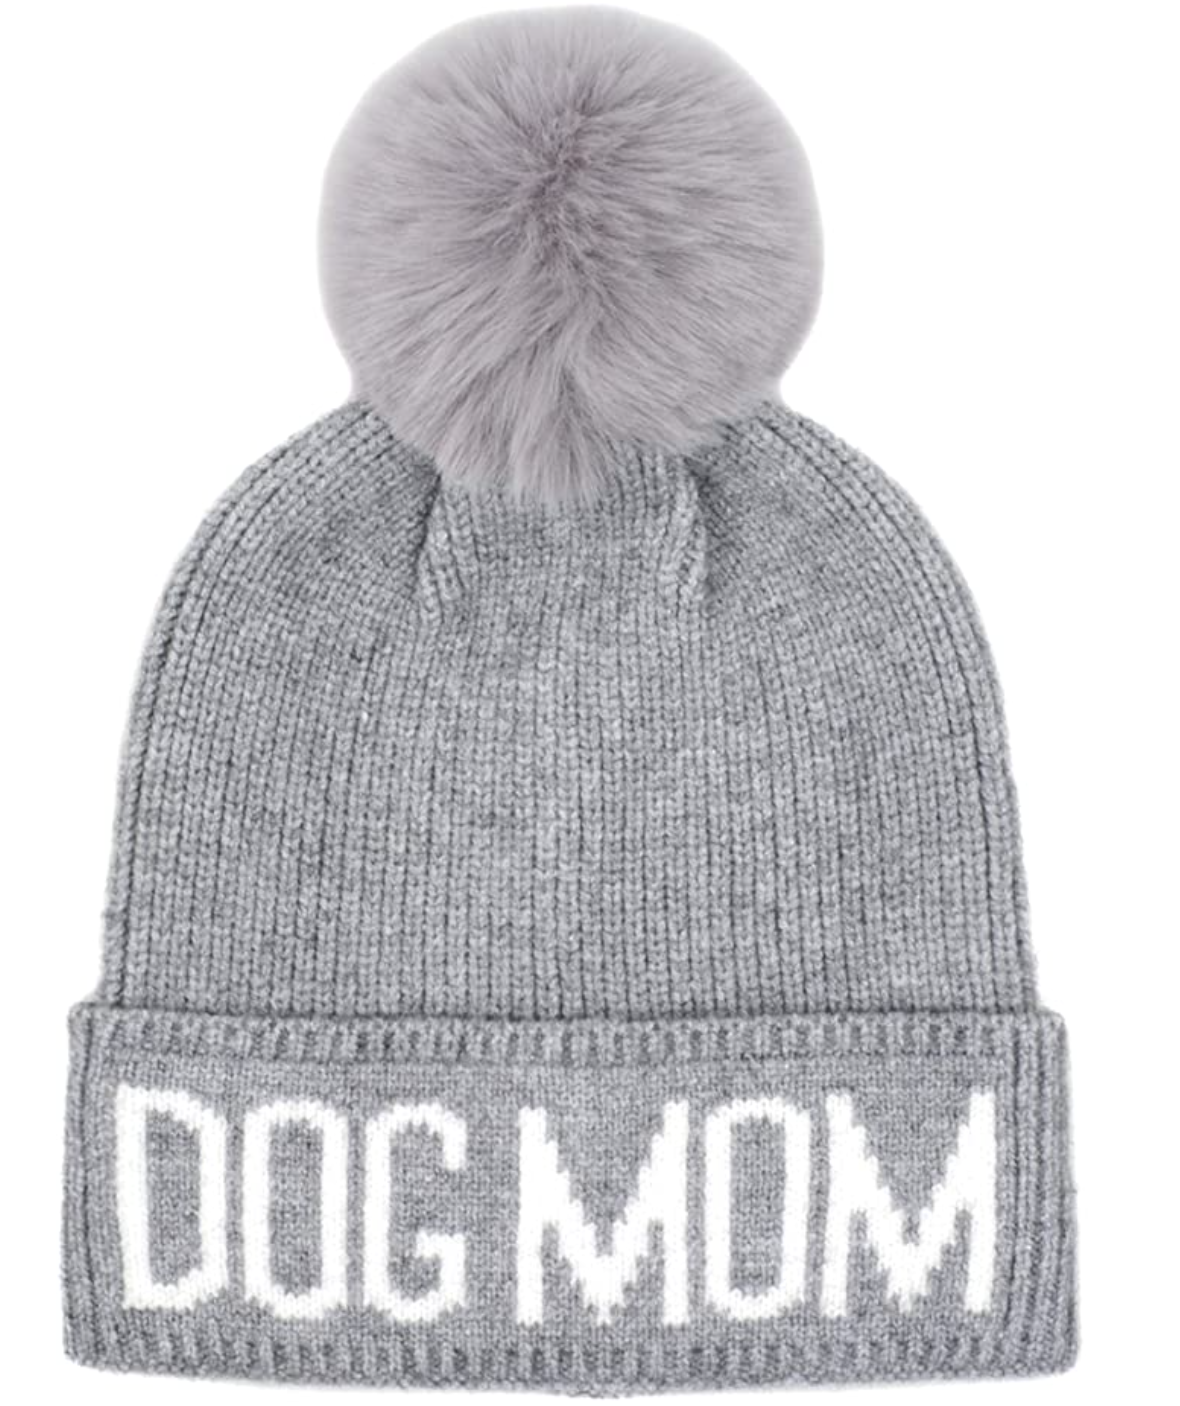 Hatphile Dog Mom Faux Fur Pompom Knit Beanie